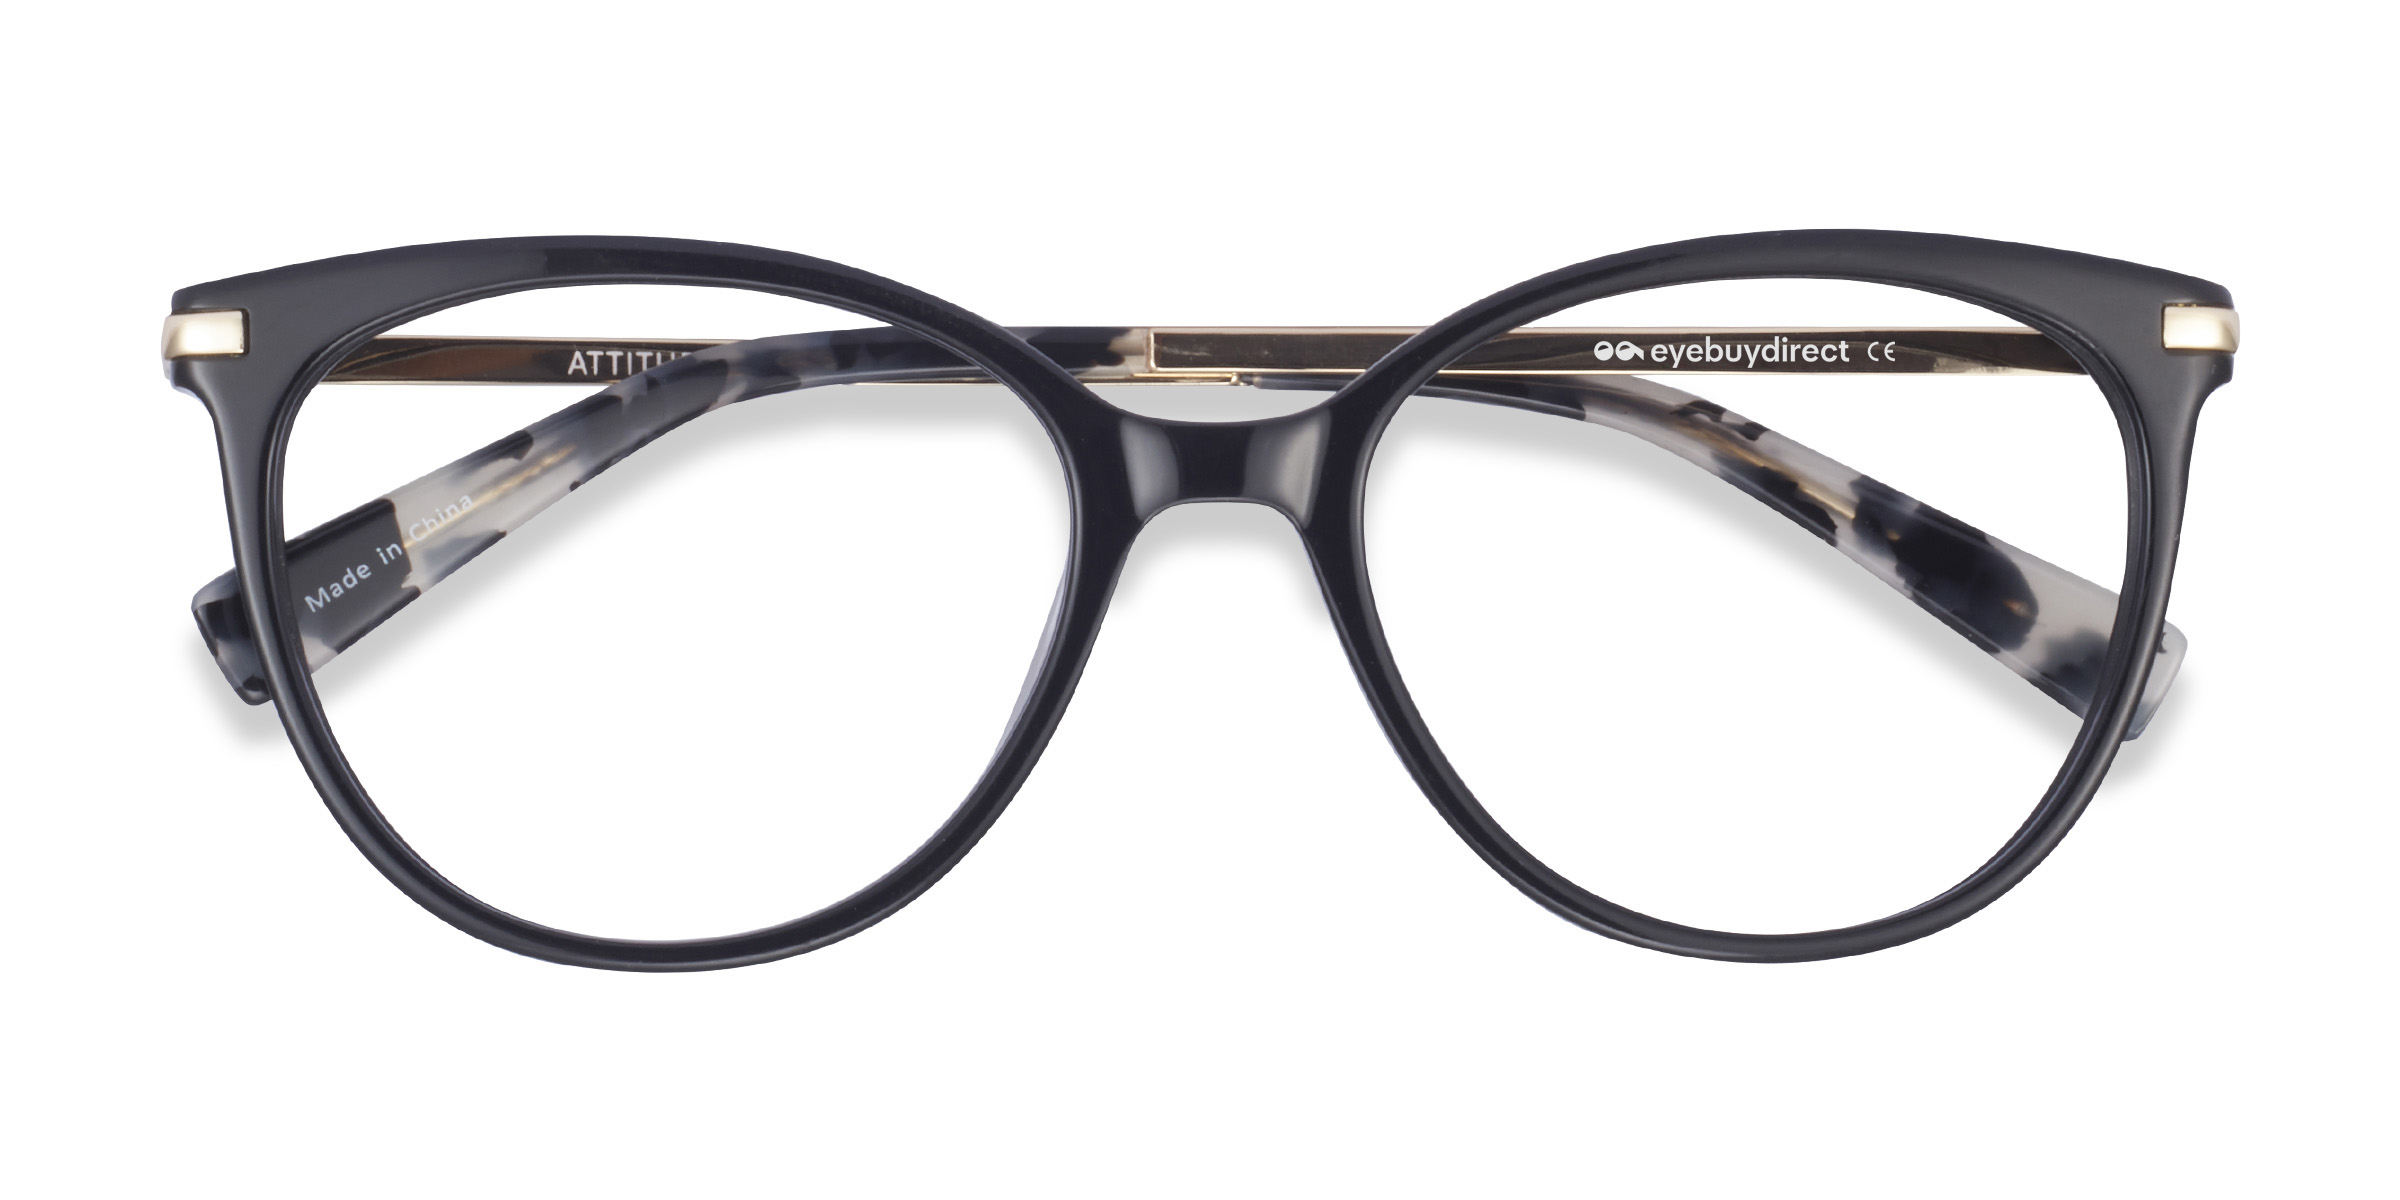 Black Glasses | Our Best Deals On Black Frame Glasses | Eyebuydirect